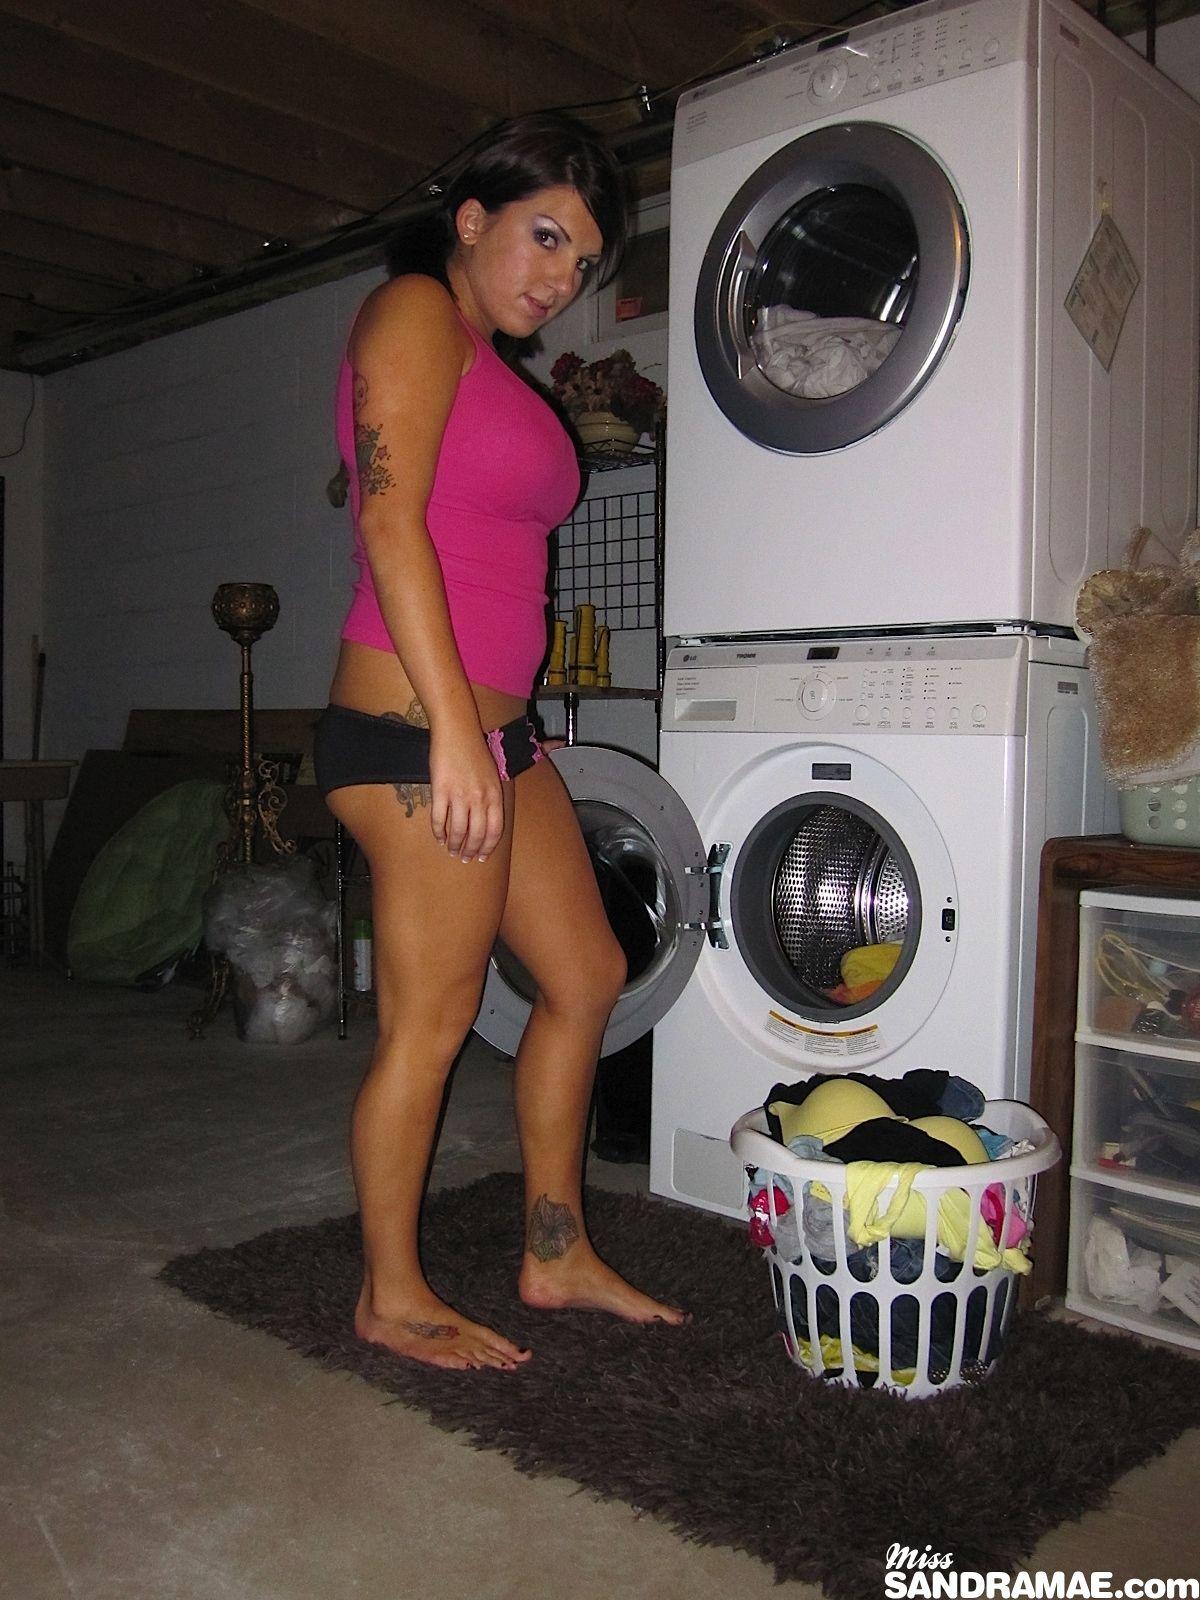 Bilder von teen cutie miss sandra mae getting naughty on laundry day
 #59901472